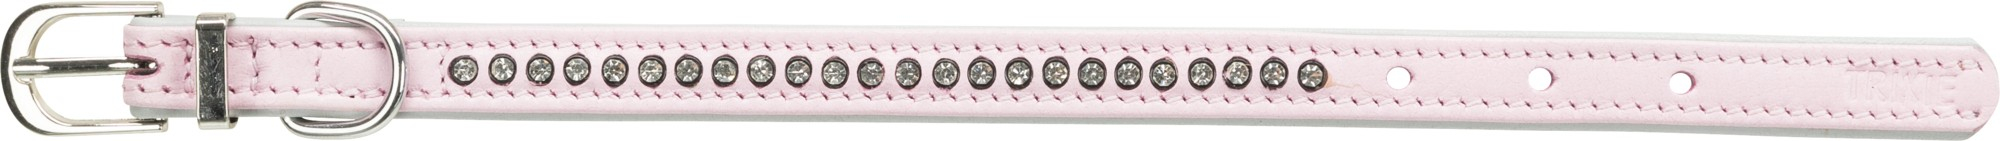 Halsband Comfort met strass roze Active